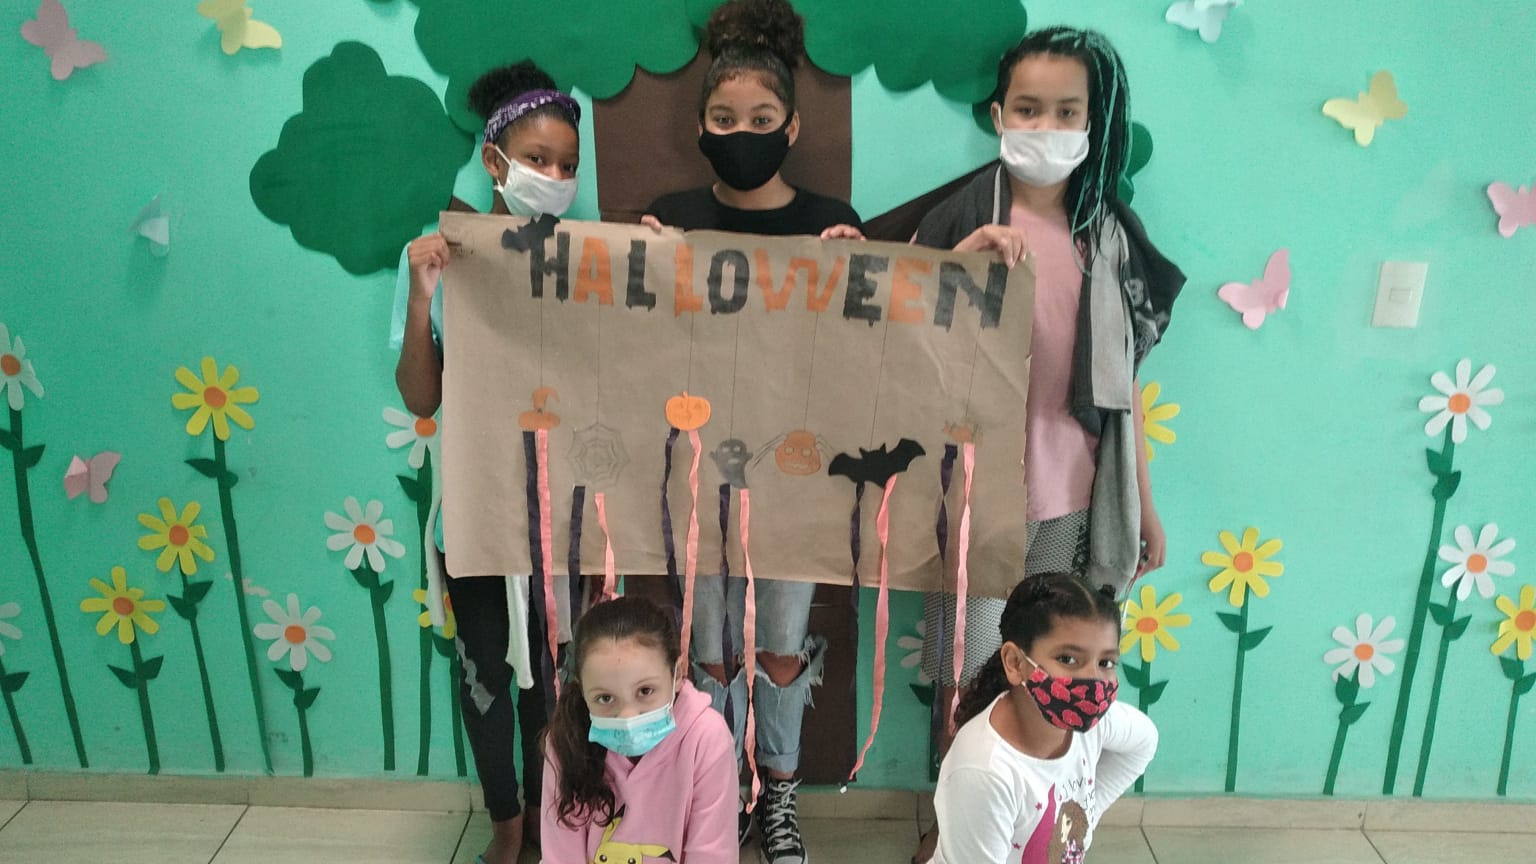 Quatro meninas posam para a foto com um dos cartazes preparados pelas próprias crianças para exposição na festa. No cartaz, escreveram a palavra “Halloween”, o Dia das Bruxas em inglês, em laranja e preto, com algumas decorações do tema.